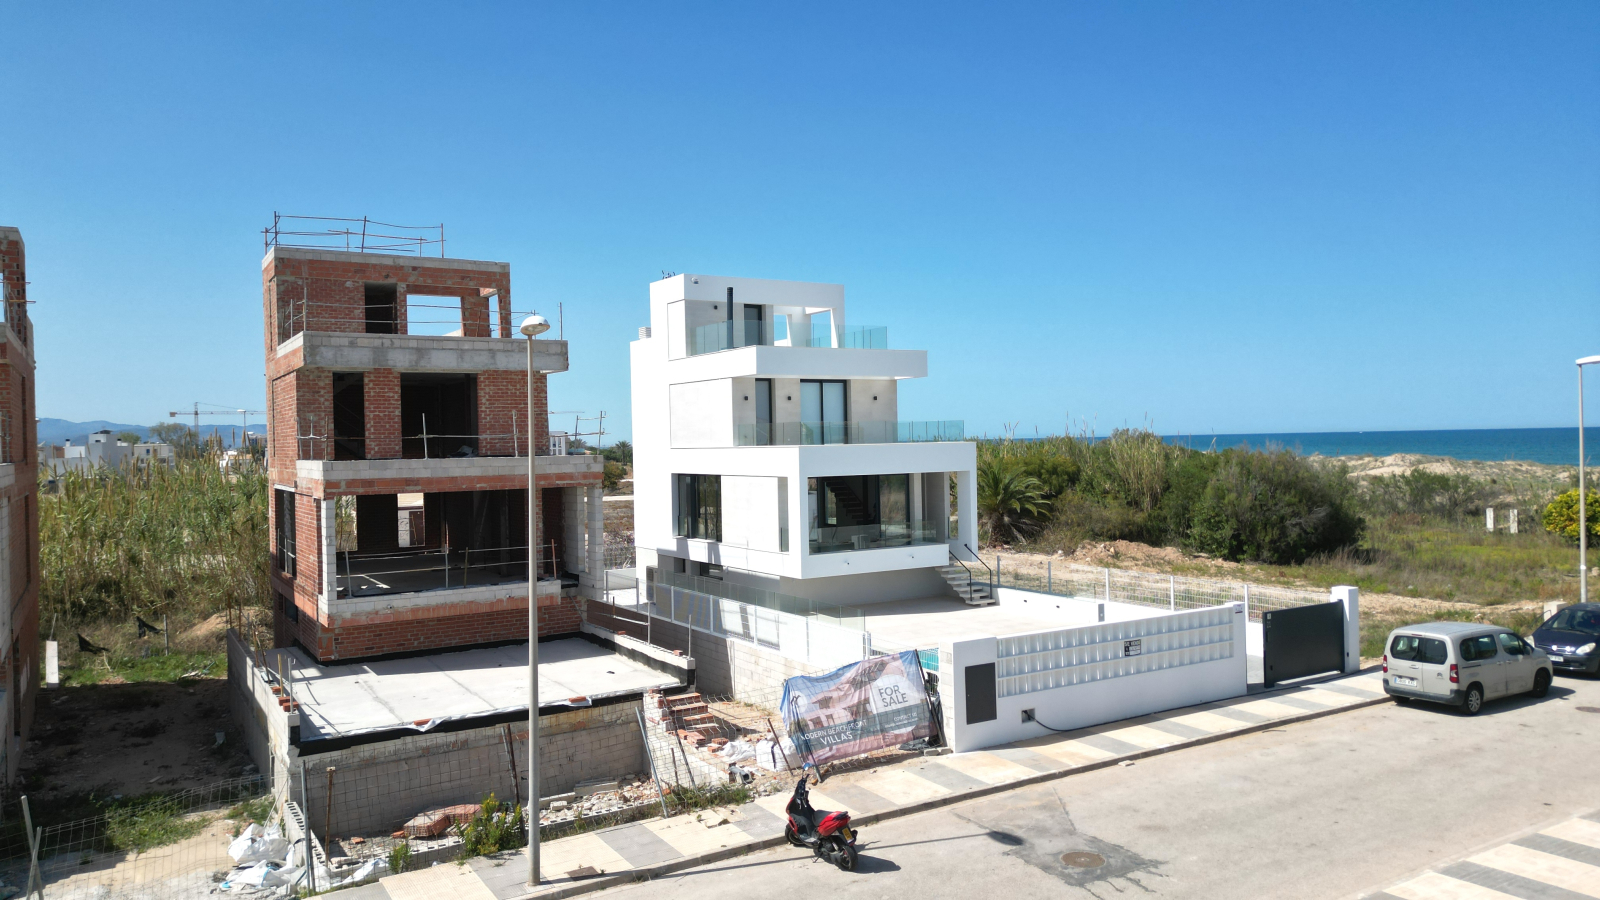 Nouvelle villa de luxe avec accès direct à la plage, non loin du port et du terrain de golf.